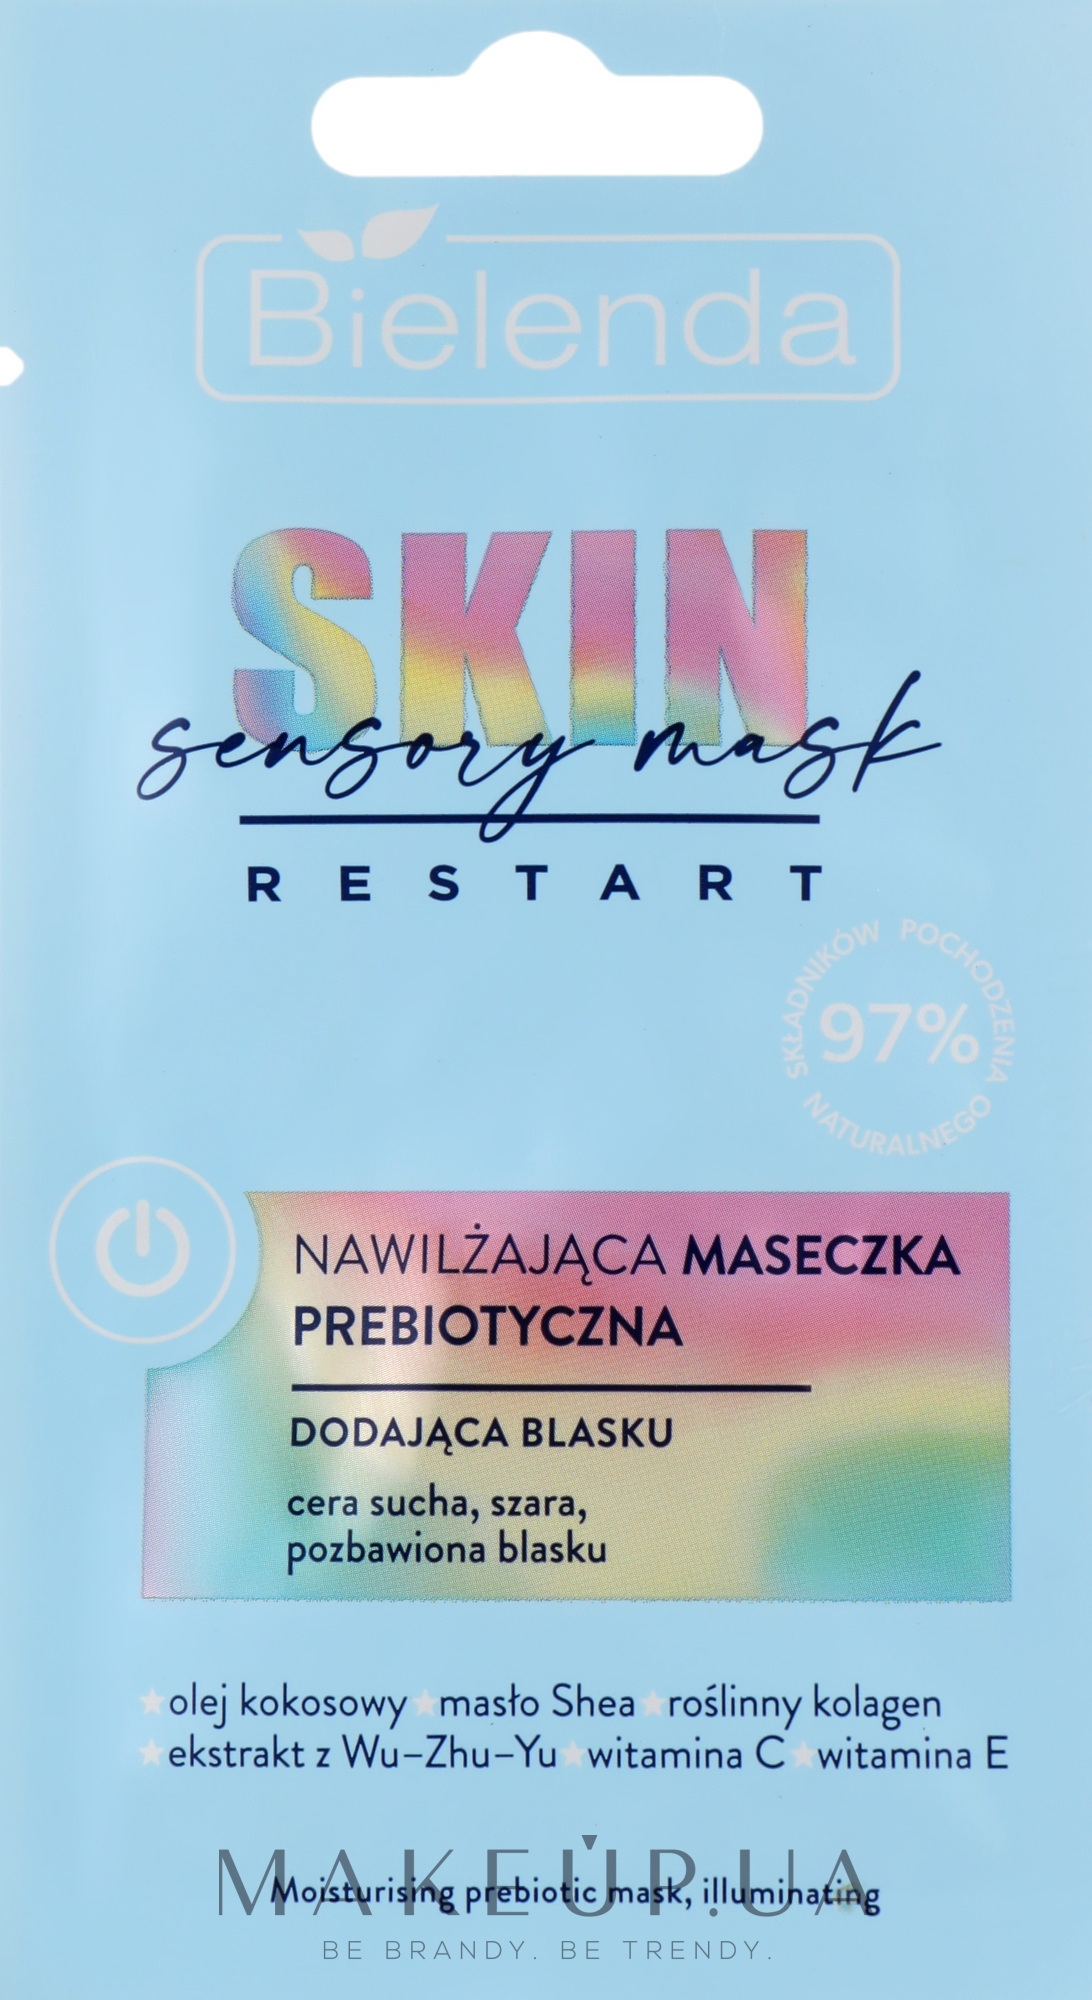 Увлажняющая пребиотическая маска для лица, придающая сияние - Bielenda Skin Restart Sensory Moisturizing Prebiotic Mask (пробник) — фото 8g